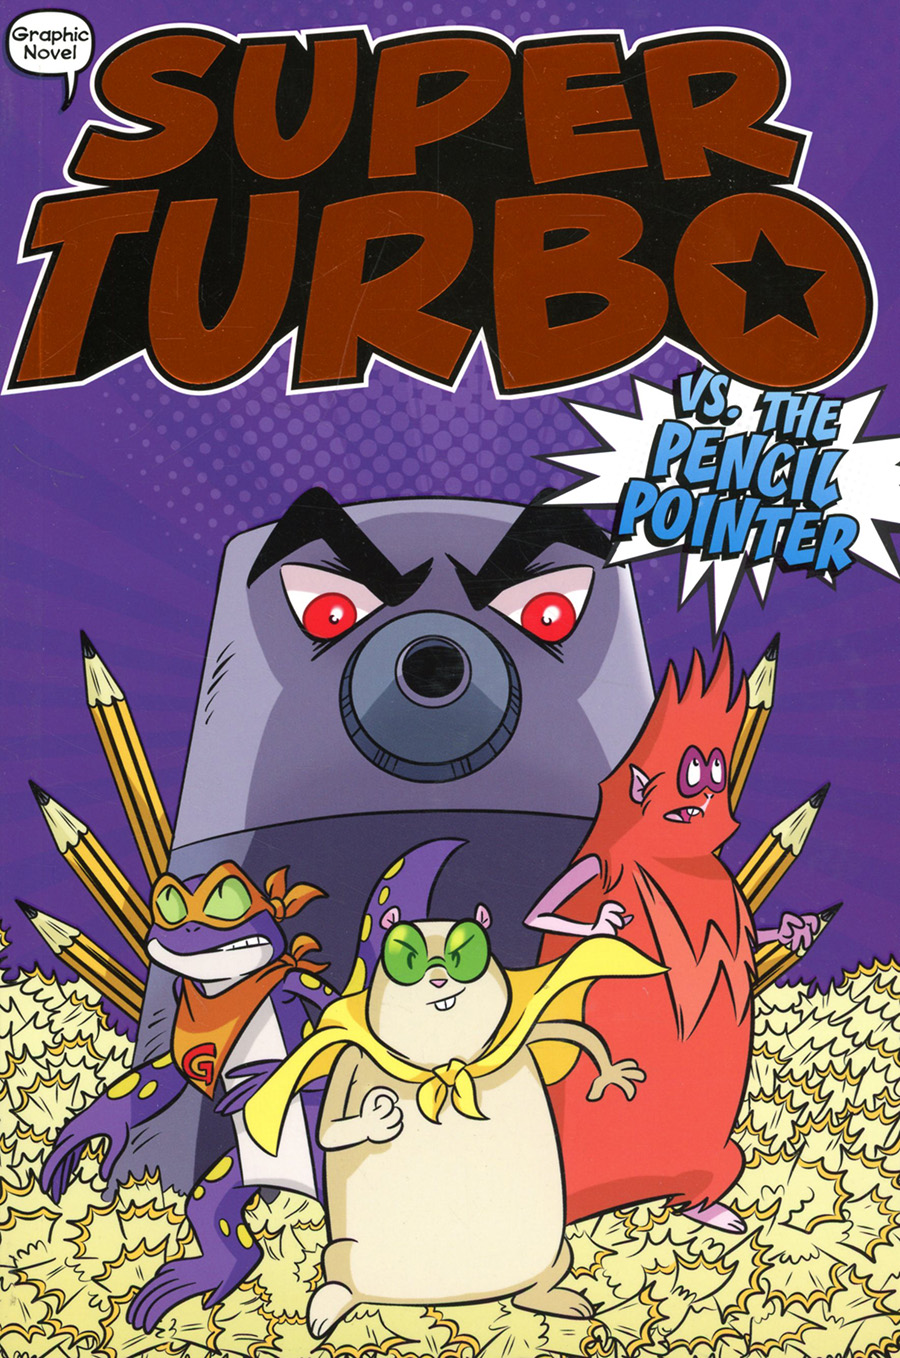 Super Turbo Vol 3 Super Turbo vs The Pencil Pointer TP